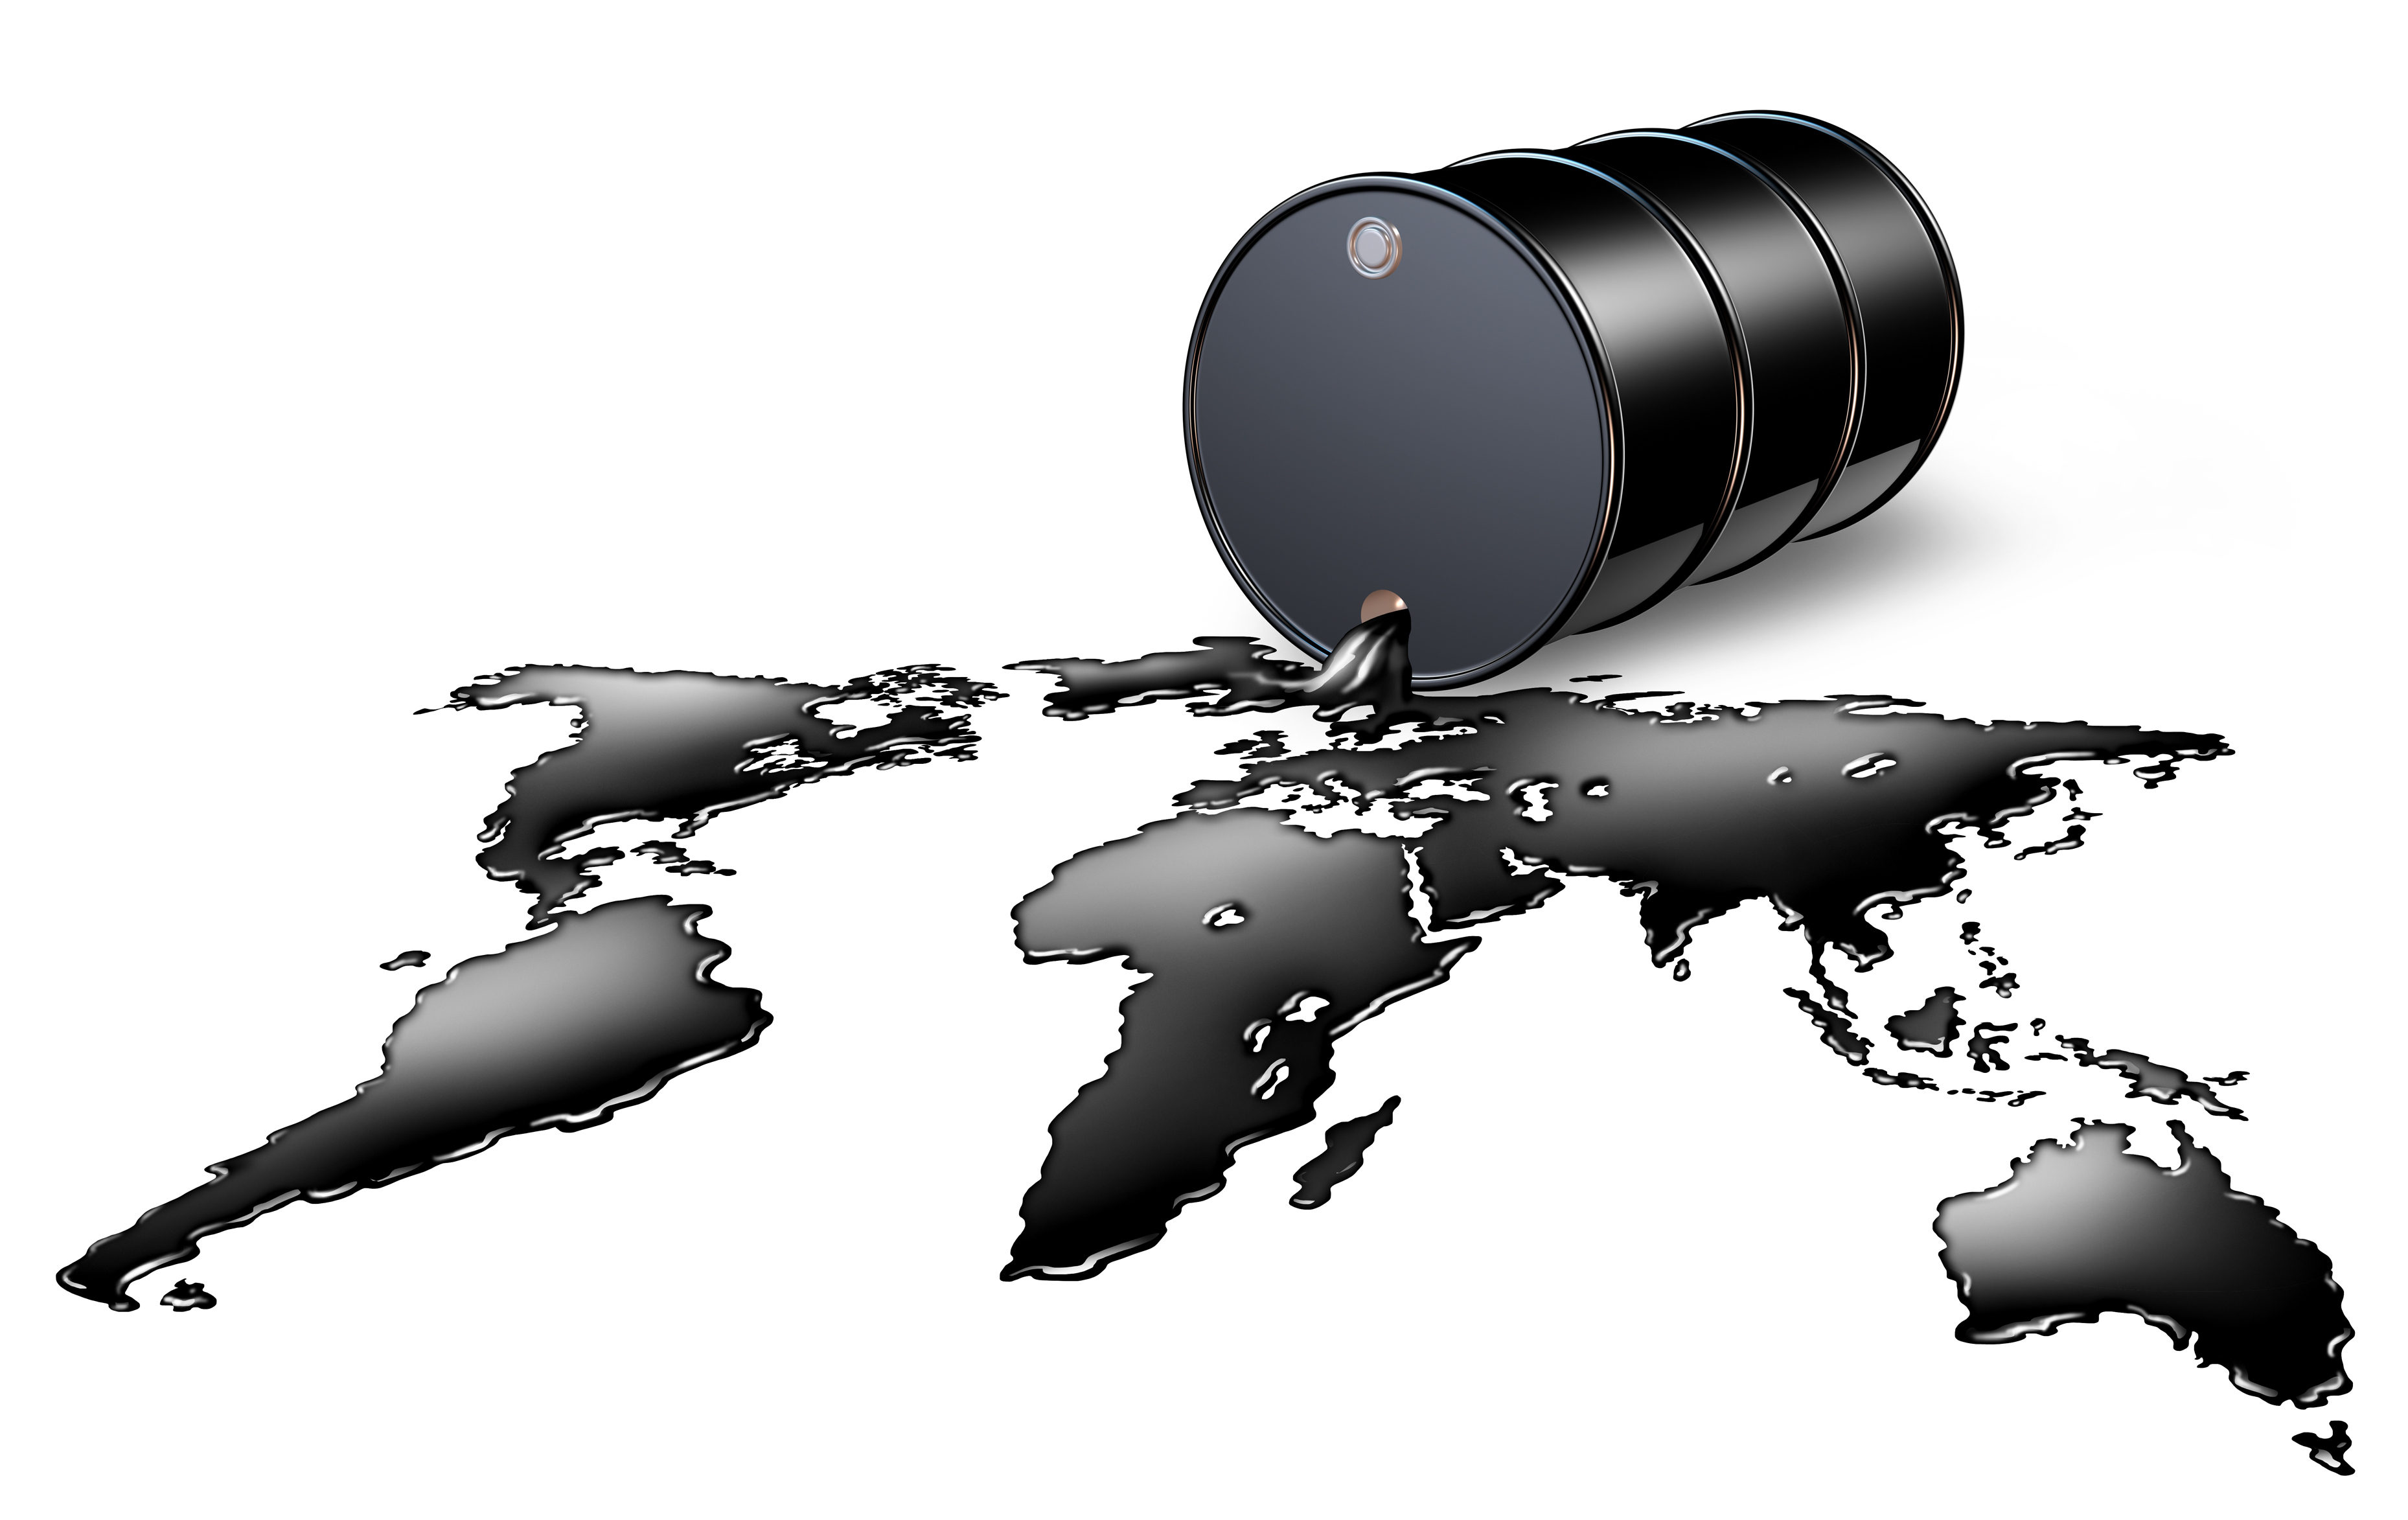 افزایش قیمت نفت جهانی ازسرگرفته شد